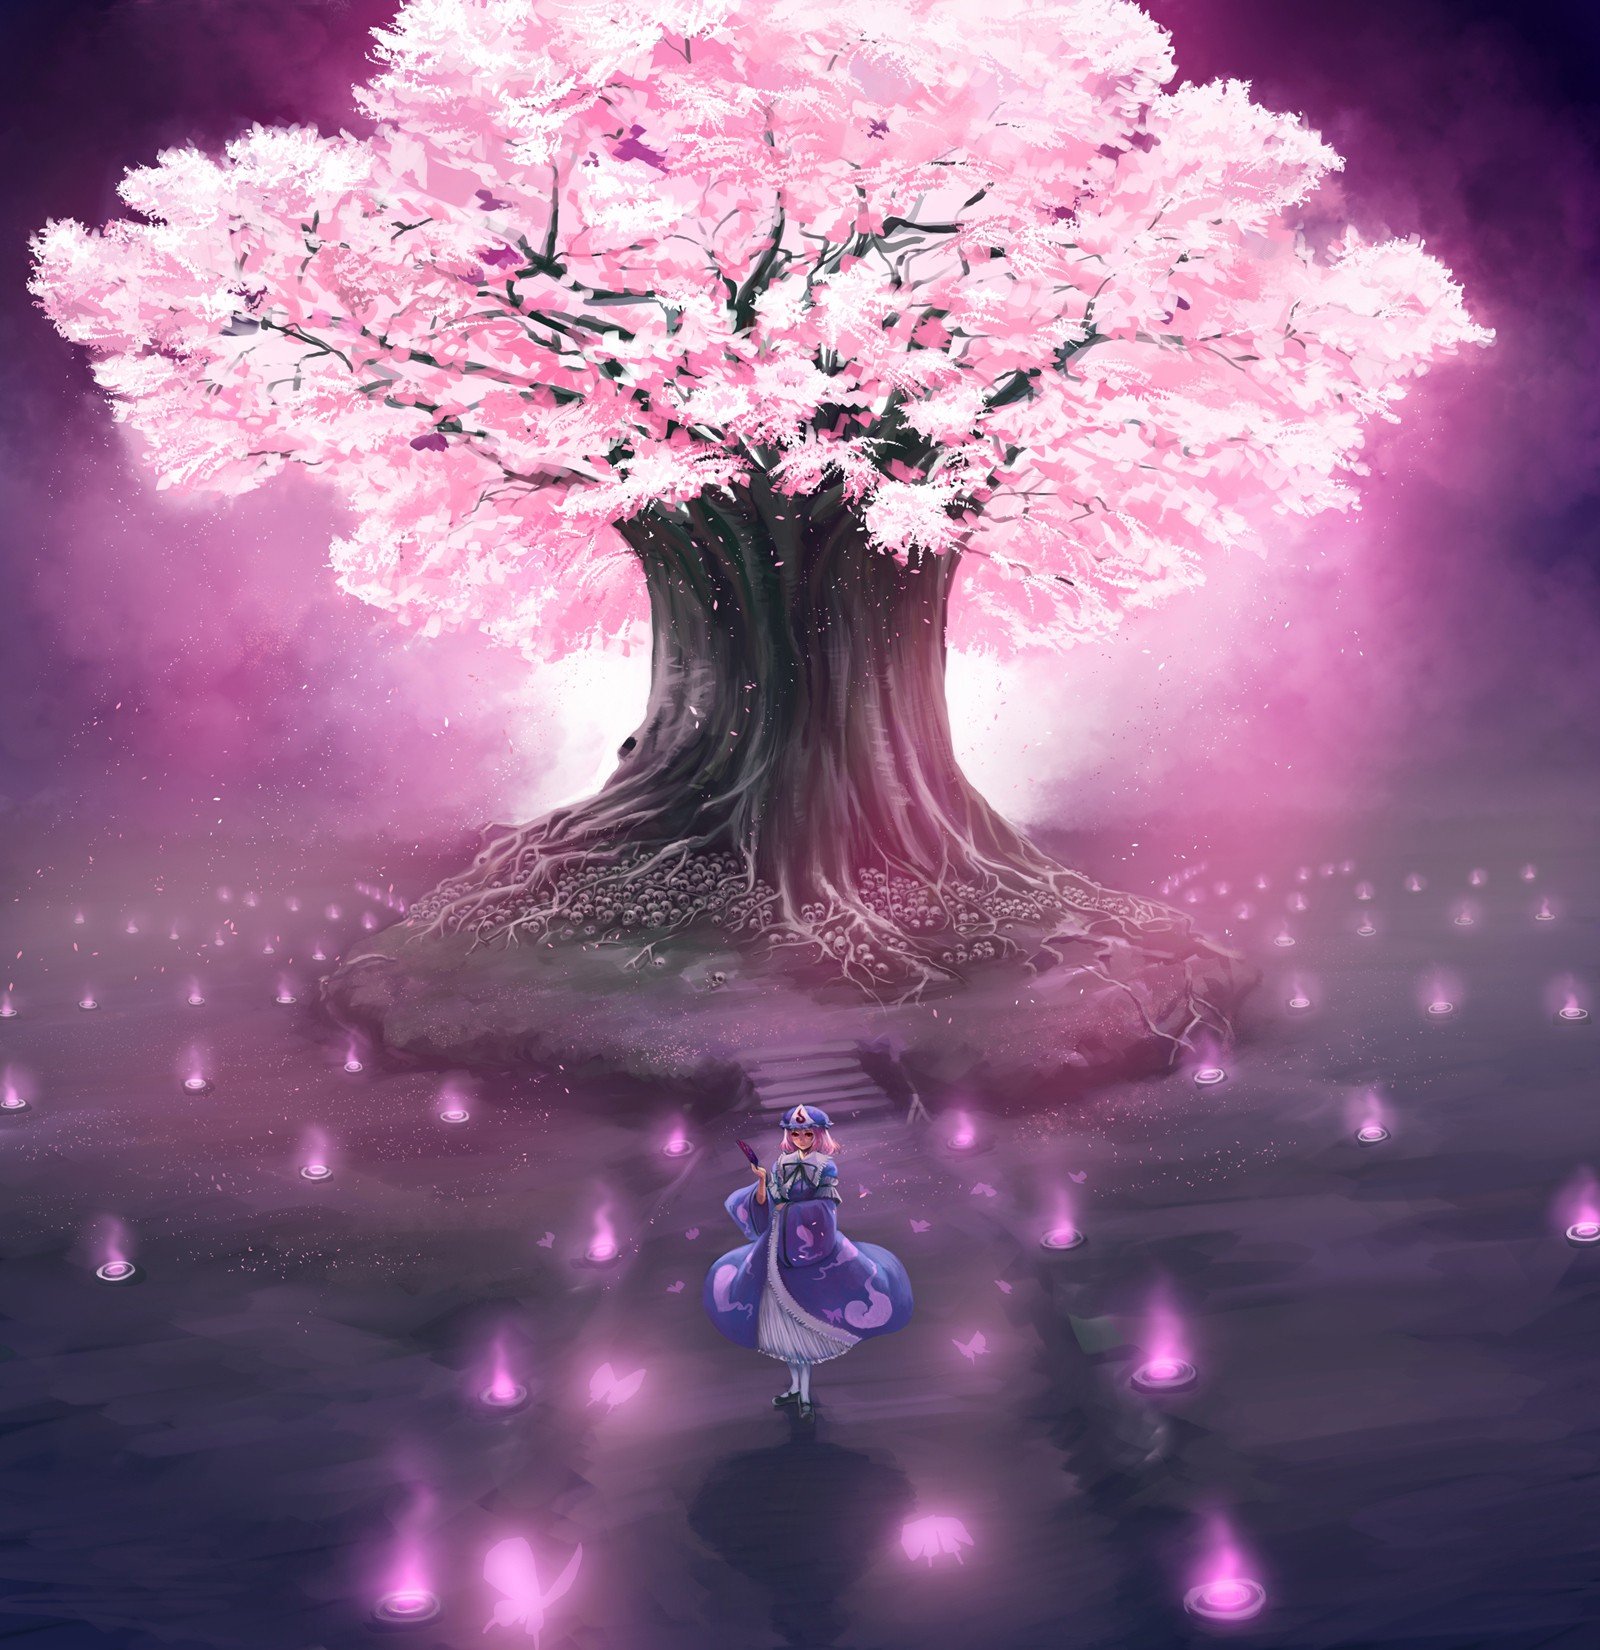 Download Mobile Wallpaper Anime, Girls, Sakura For - Anime Cherry Blossom Tree - HD Wallpaper 